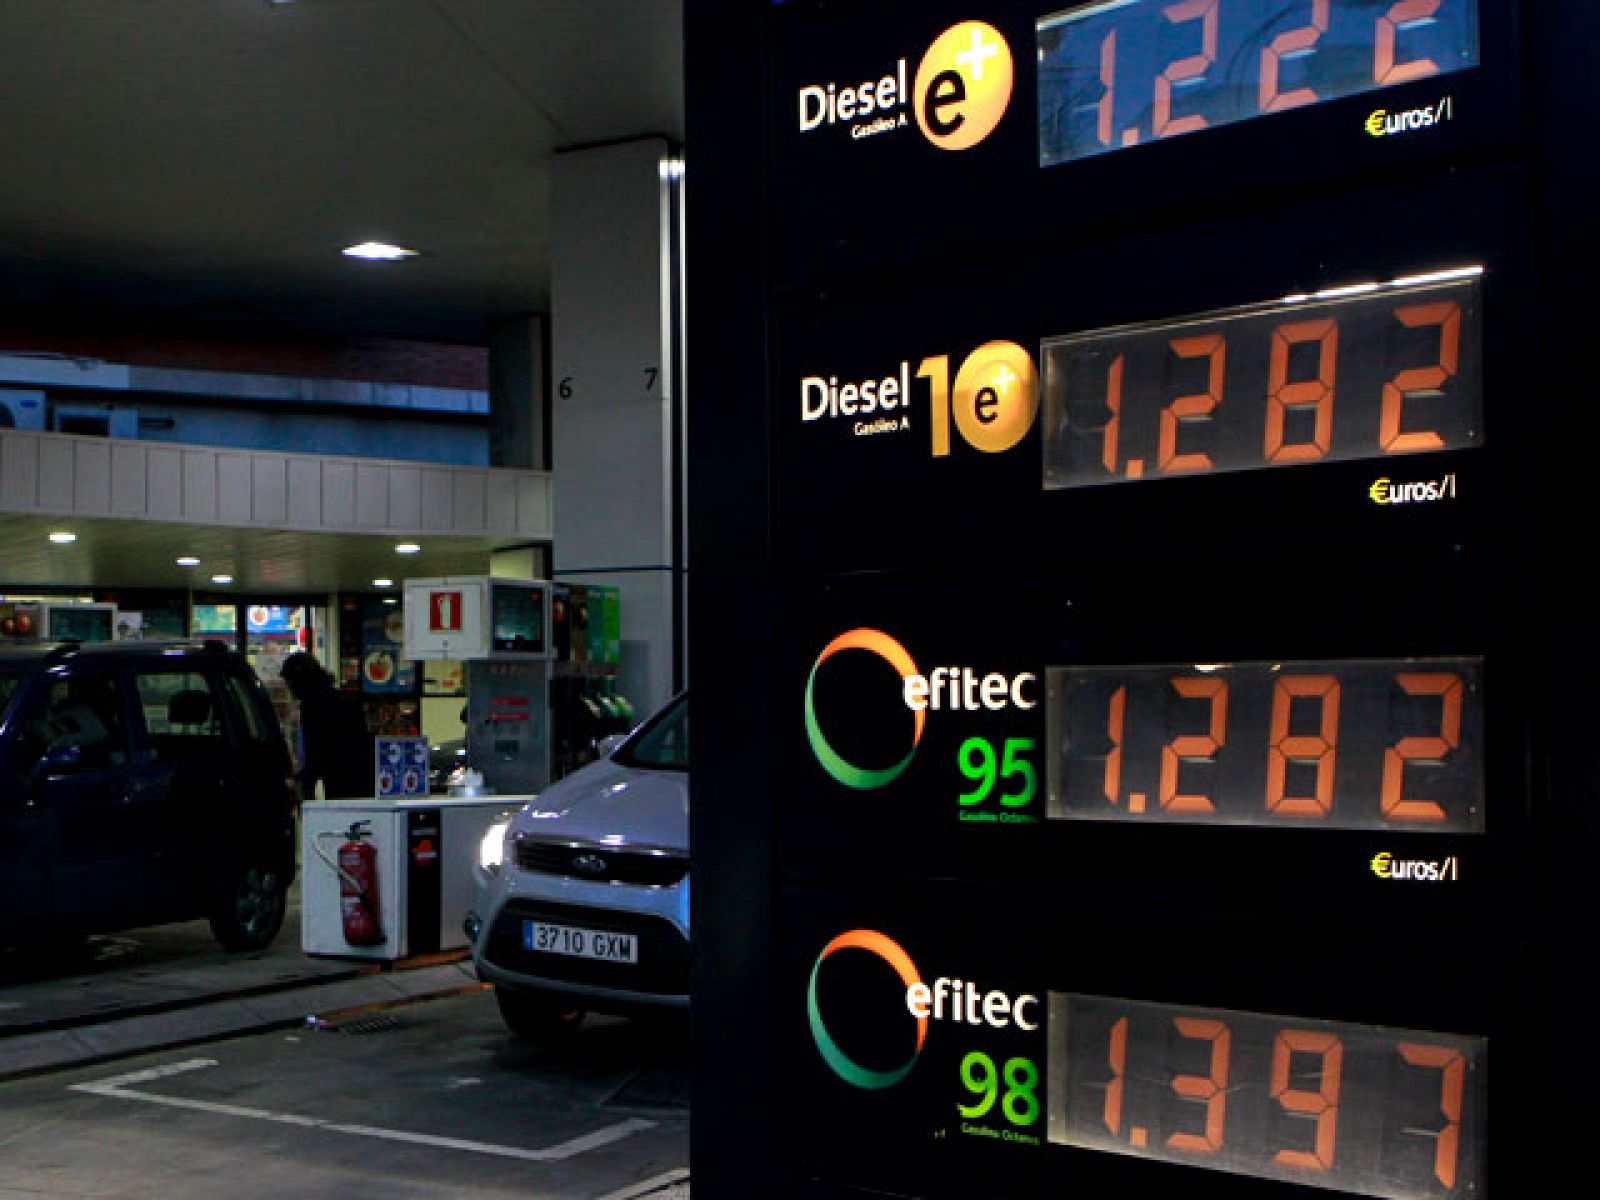 Un litro de euro-super 95 cuesta 1,285 euros. Las petroleras han dicho que la culpa la tienen los impuestos y el mercado internacional.